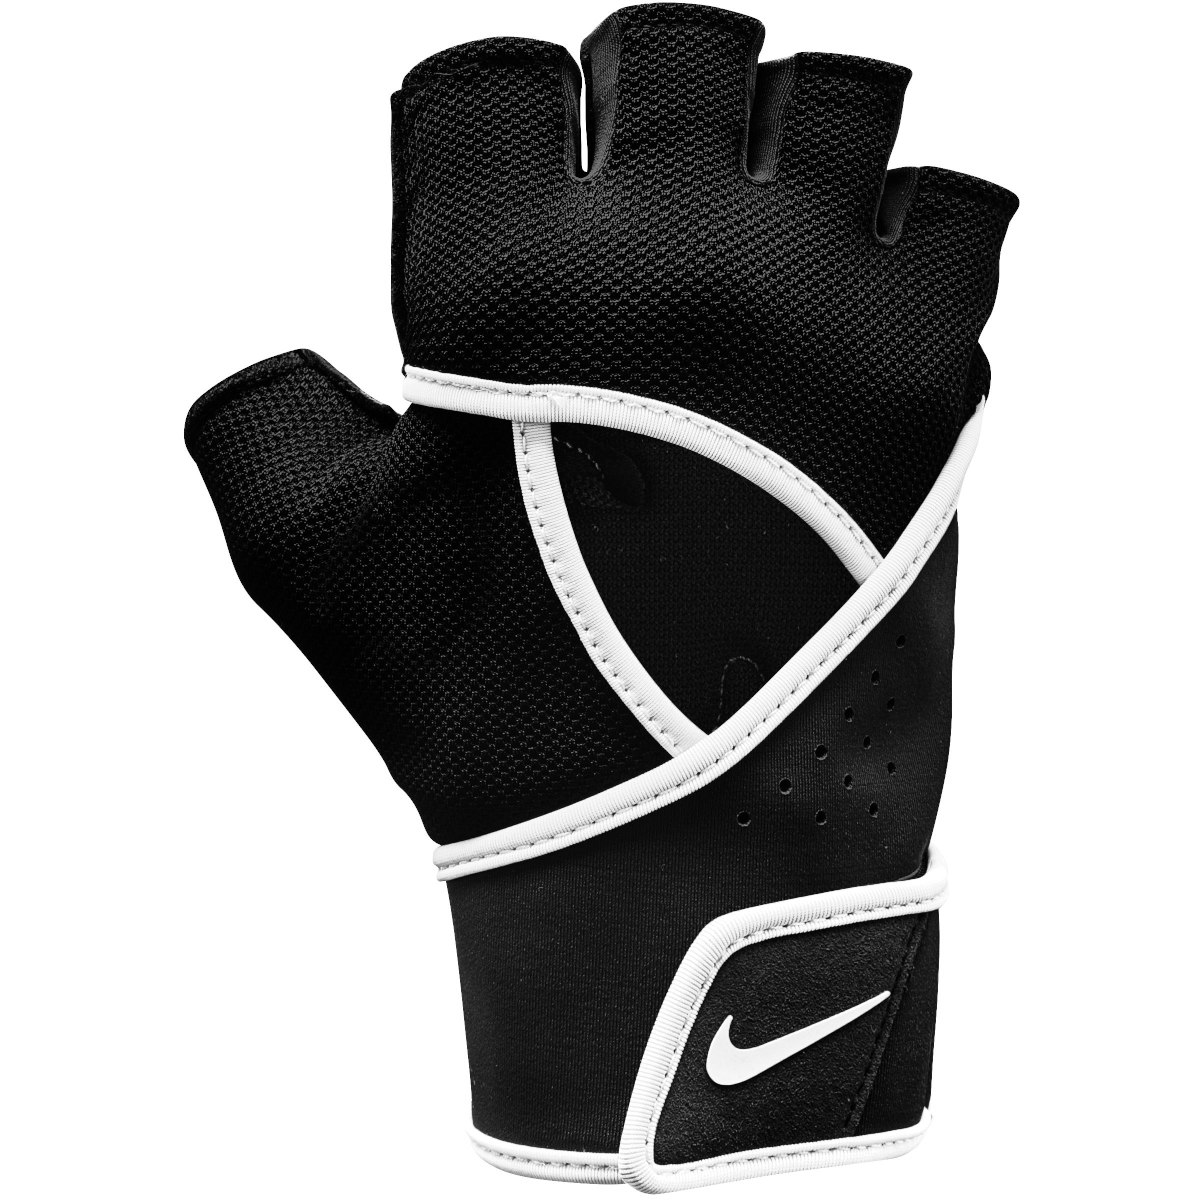 Productfoto van Nike Dames Gym Premium Fitness-Handschoenen - zwart/wit 010